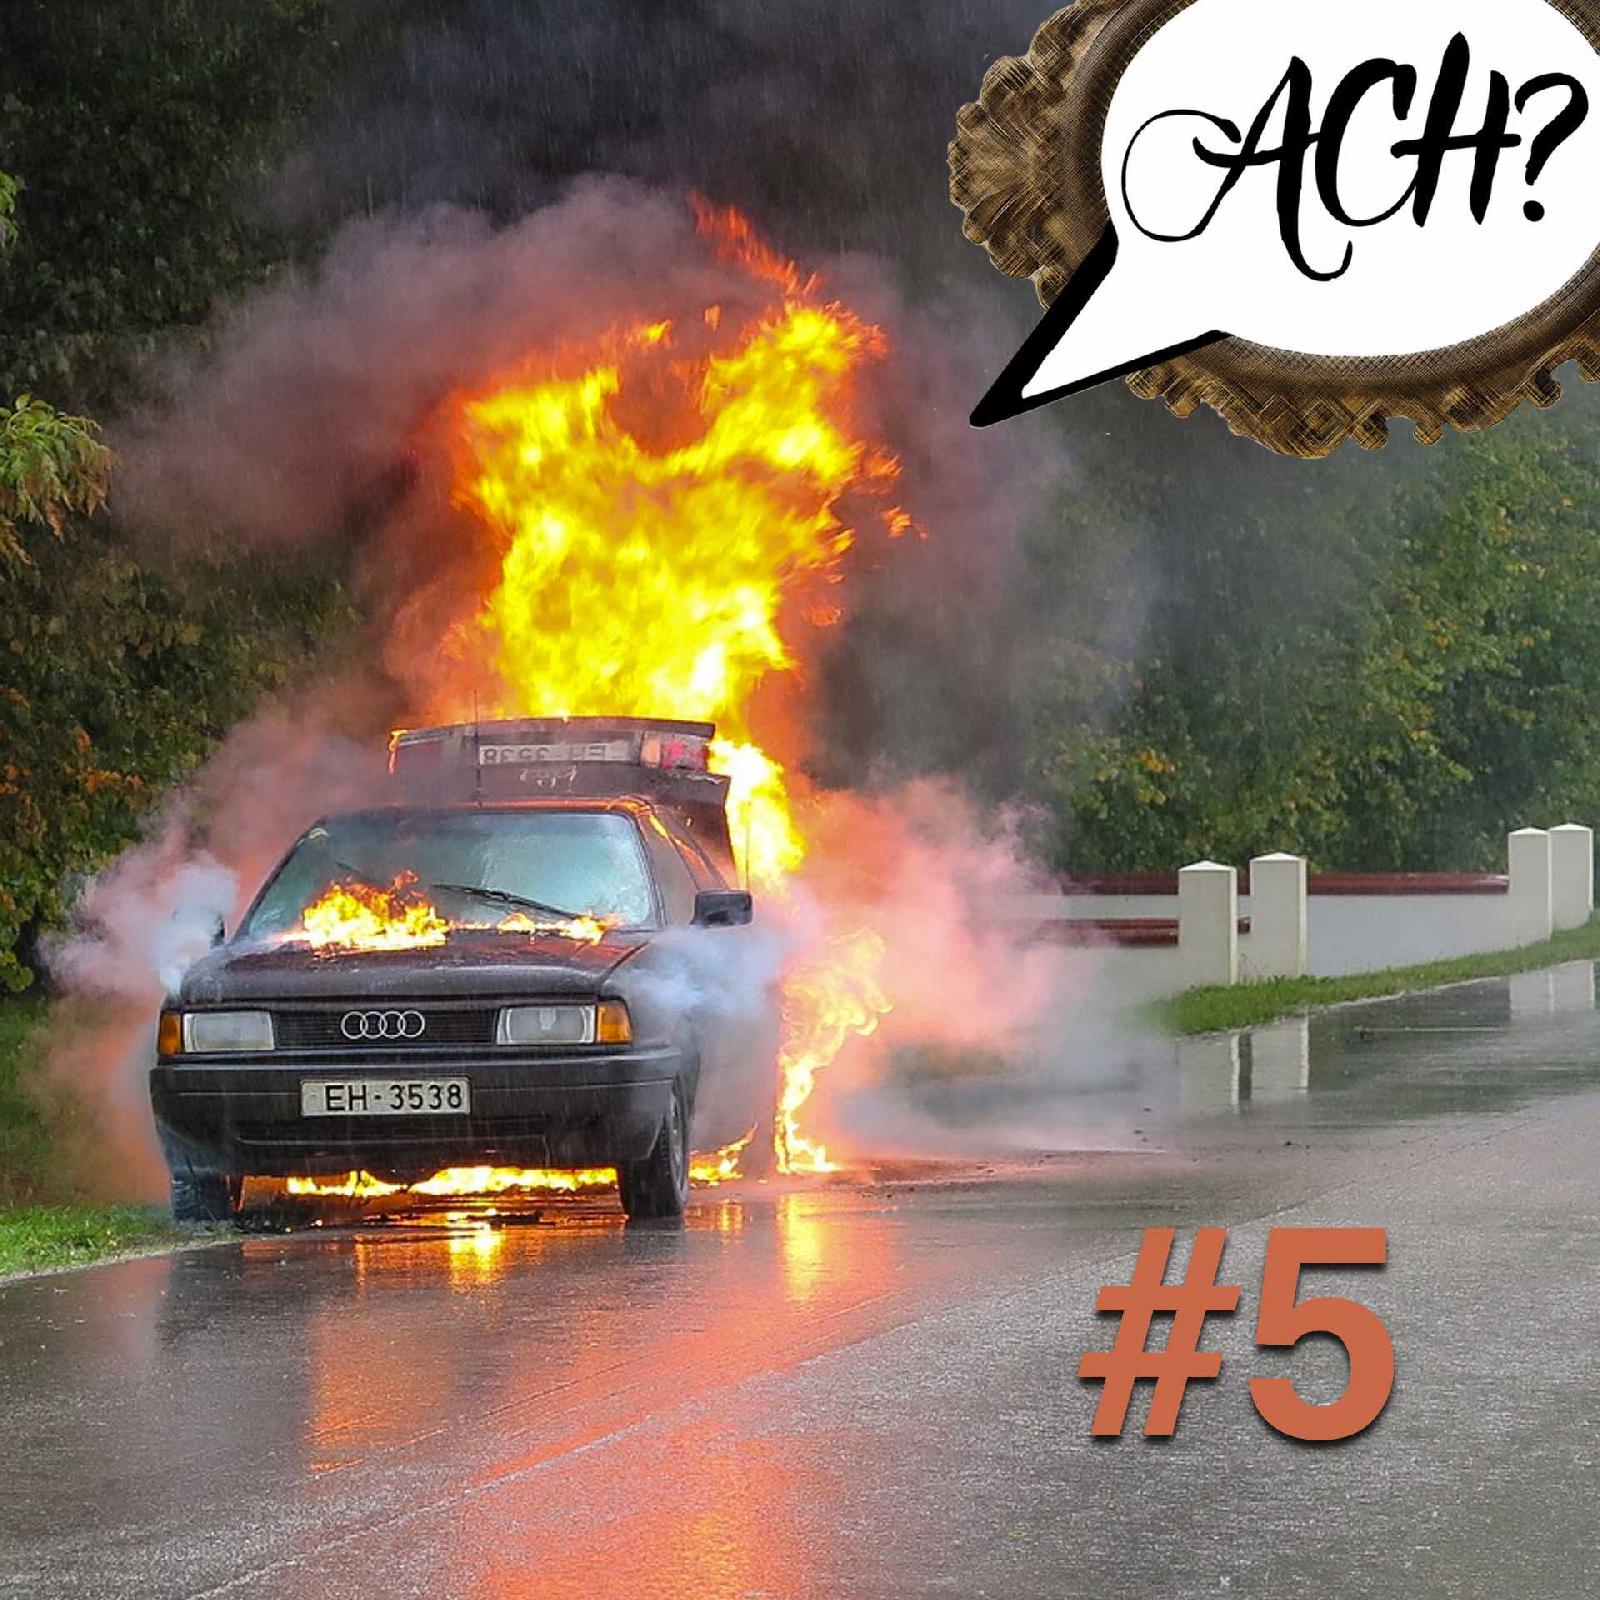 Ach-Podcast: 5 – Verunglückte Verkehrspioniere und andere lustige Rekorde